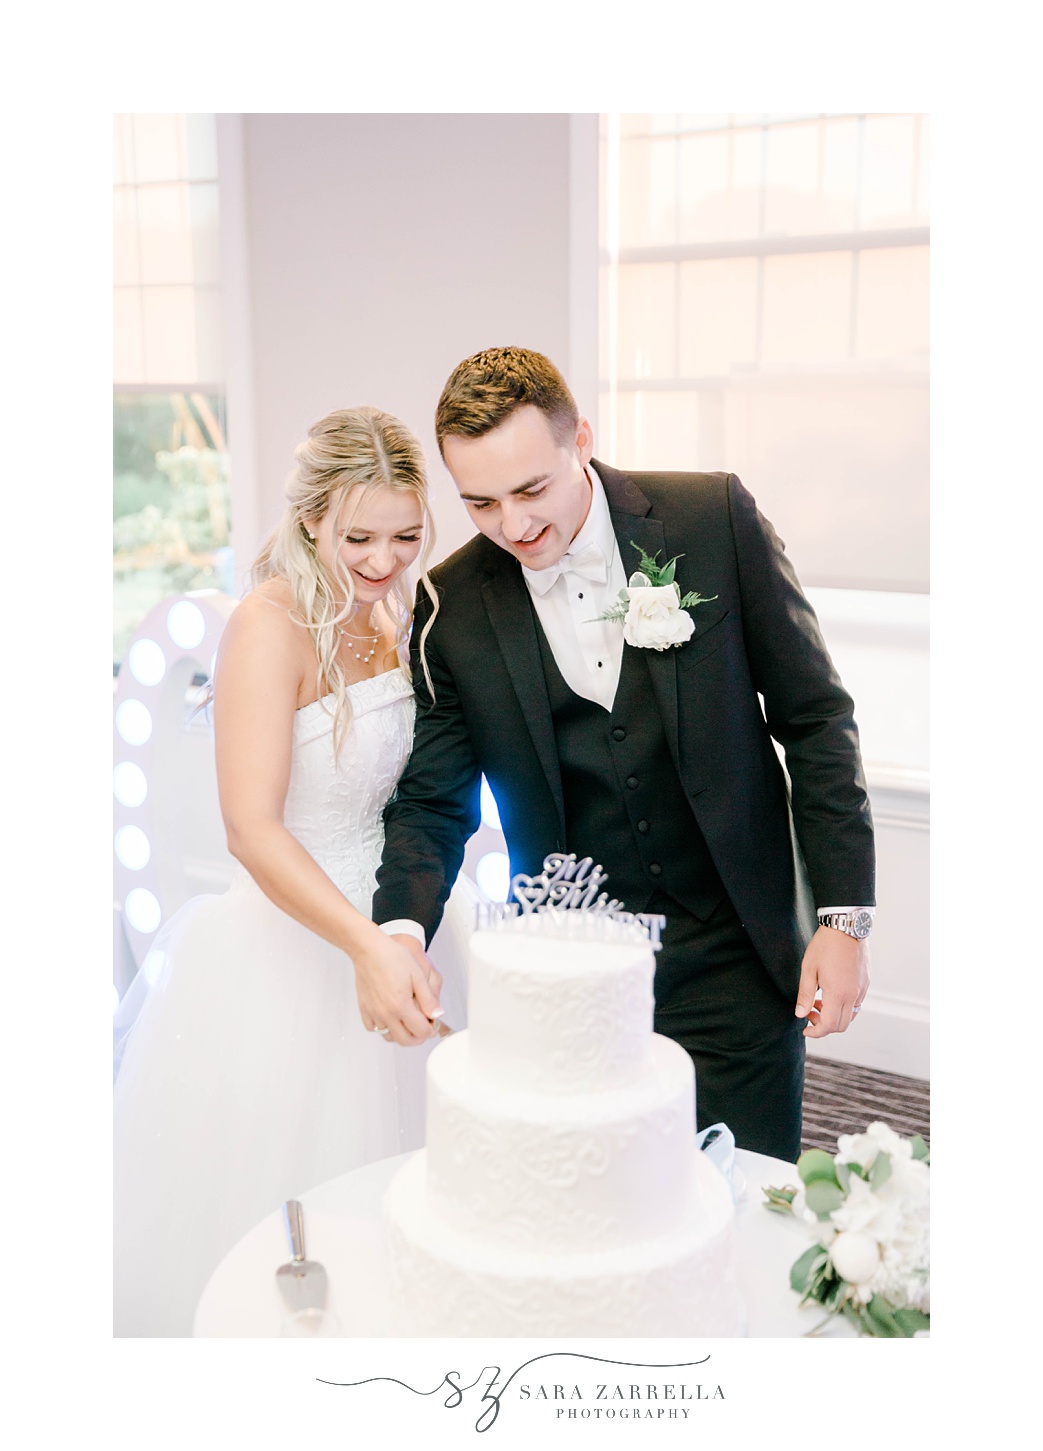 newlyweds cut wedding cake during Warwick RI wedding reception